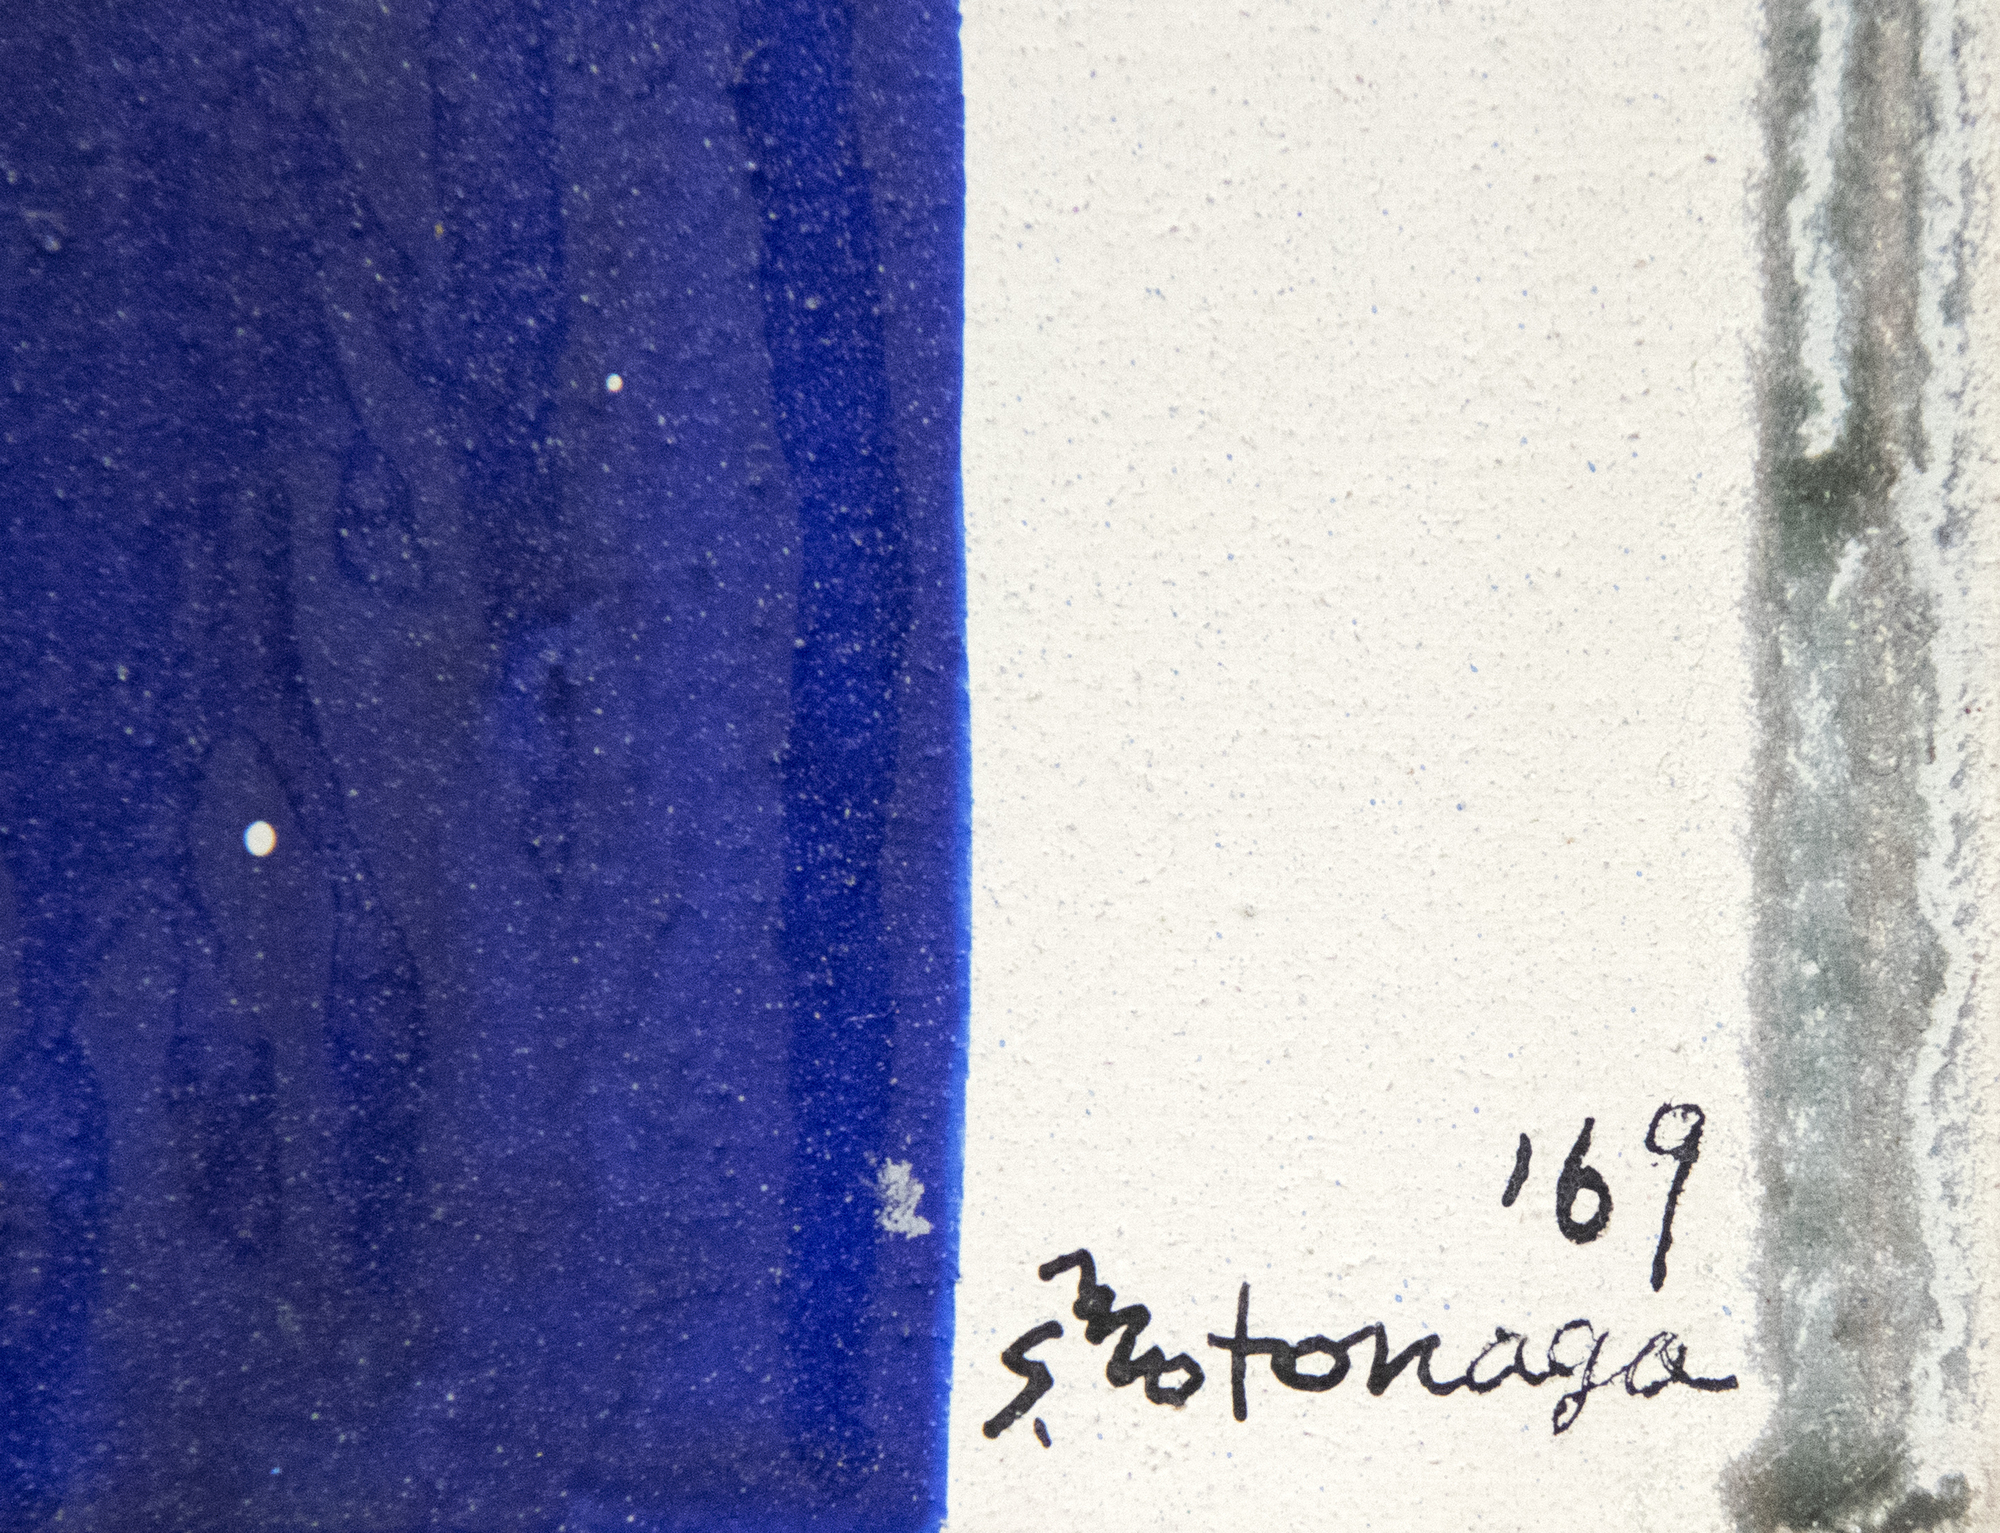 Membre de la légendaire association artistique Gutai qui a prospéré entre 1954 et 1972, Sadamasa Motonaga a émergé lorsque l'existentialisme surréaliste post-atomique était à la pointe du développement artistique au Japon. Pourtant, il a choisi une voie différente. Il a tourné le dos à la destruction causée par la guerre et a créé une œuvre fraîche, jubilatoire et ludique. Untitled" de 1969 est dans son style classique, qui s'est développé en même temps que les peintures dites "Veil" de Morris Louis. Il s'agit d'une démonstration brillamment réussie de la version avant-gardiste de Motonaga sur le traditionnel Tarashikomi japonais - la technique qui consiste à incliner la toile à différents angles pour permettre aux mélanges de résine et d'émail de couler les uns sur les autres avant que la peinture ne soit complètement sèche.